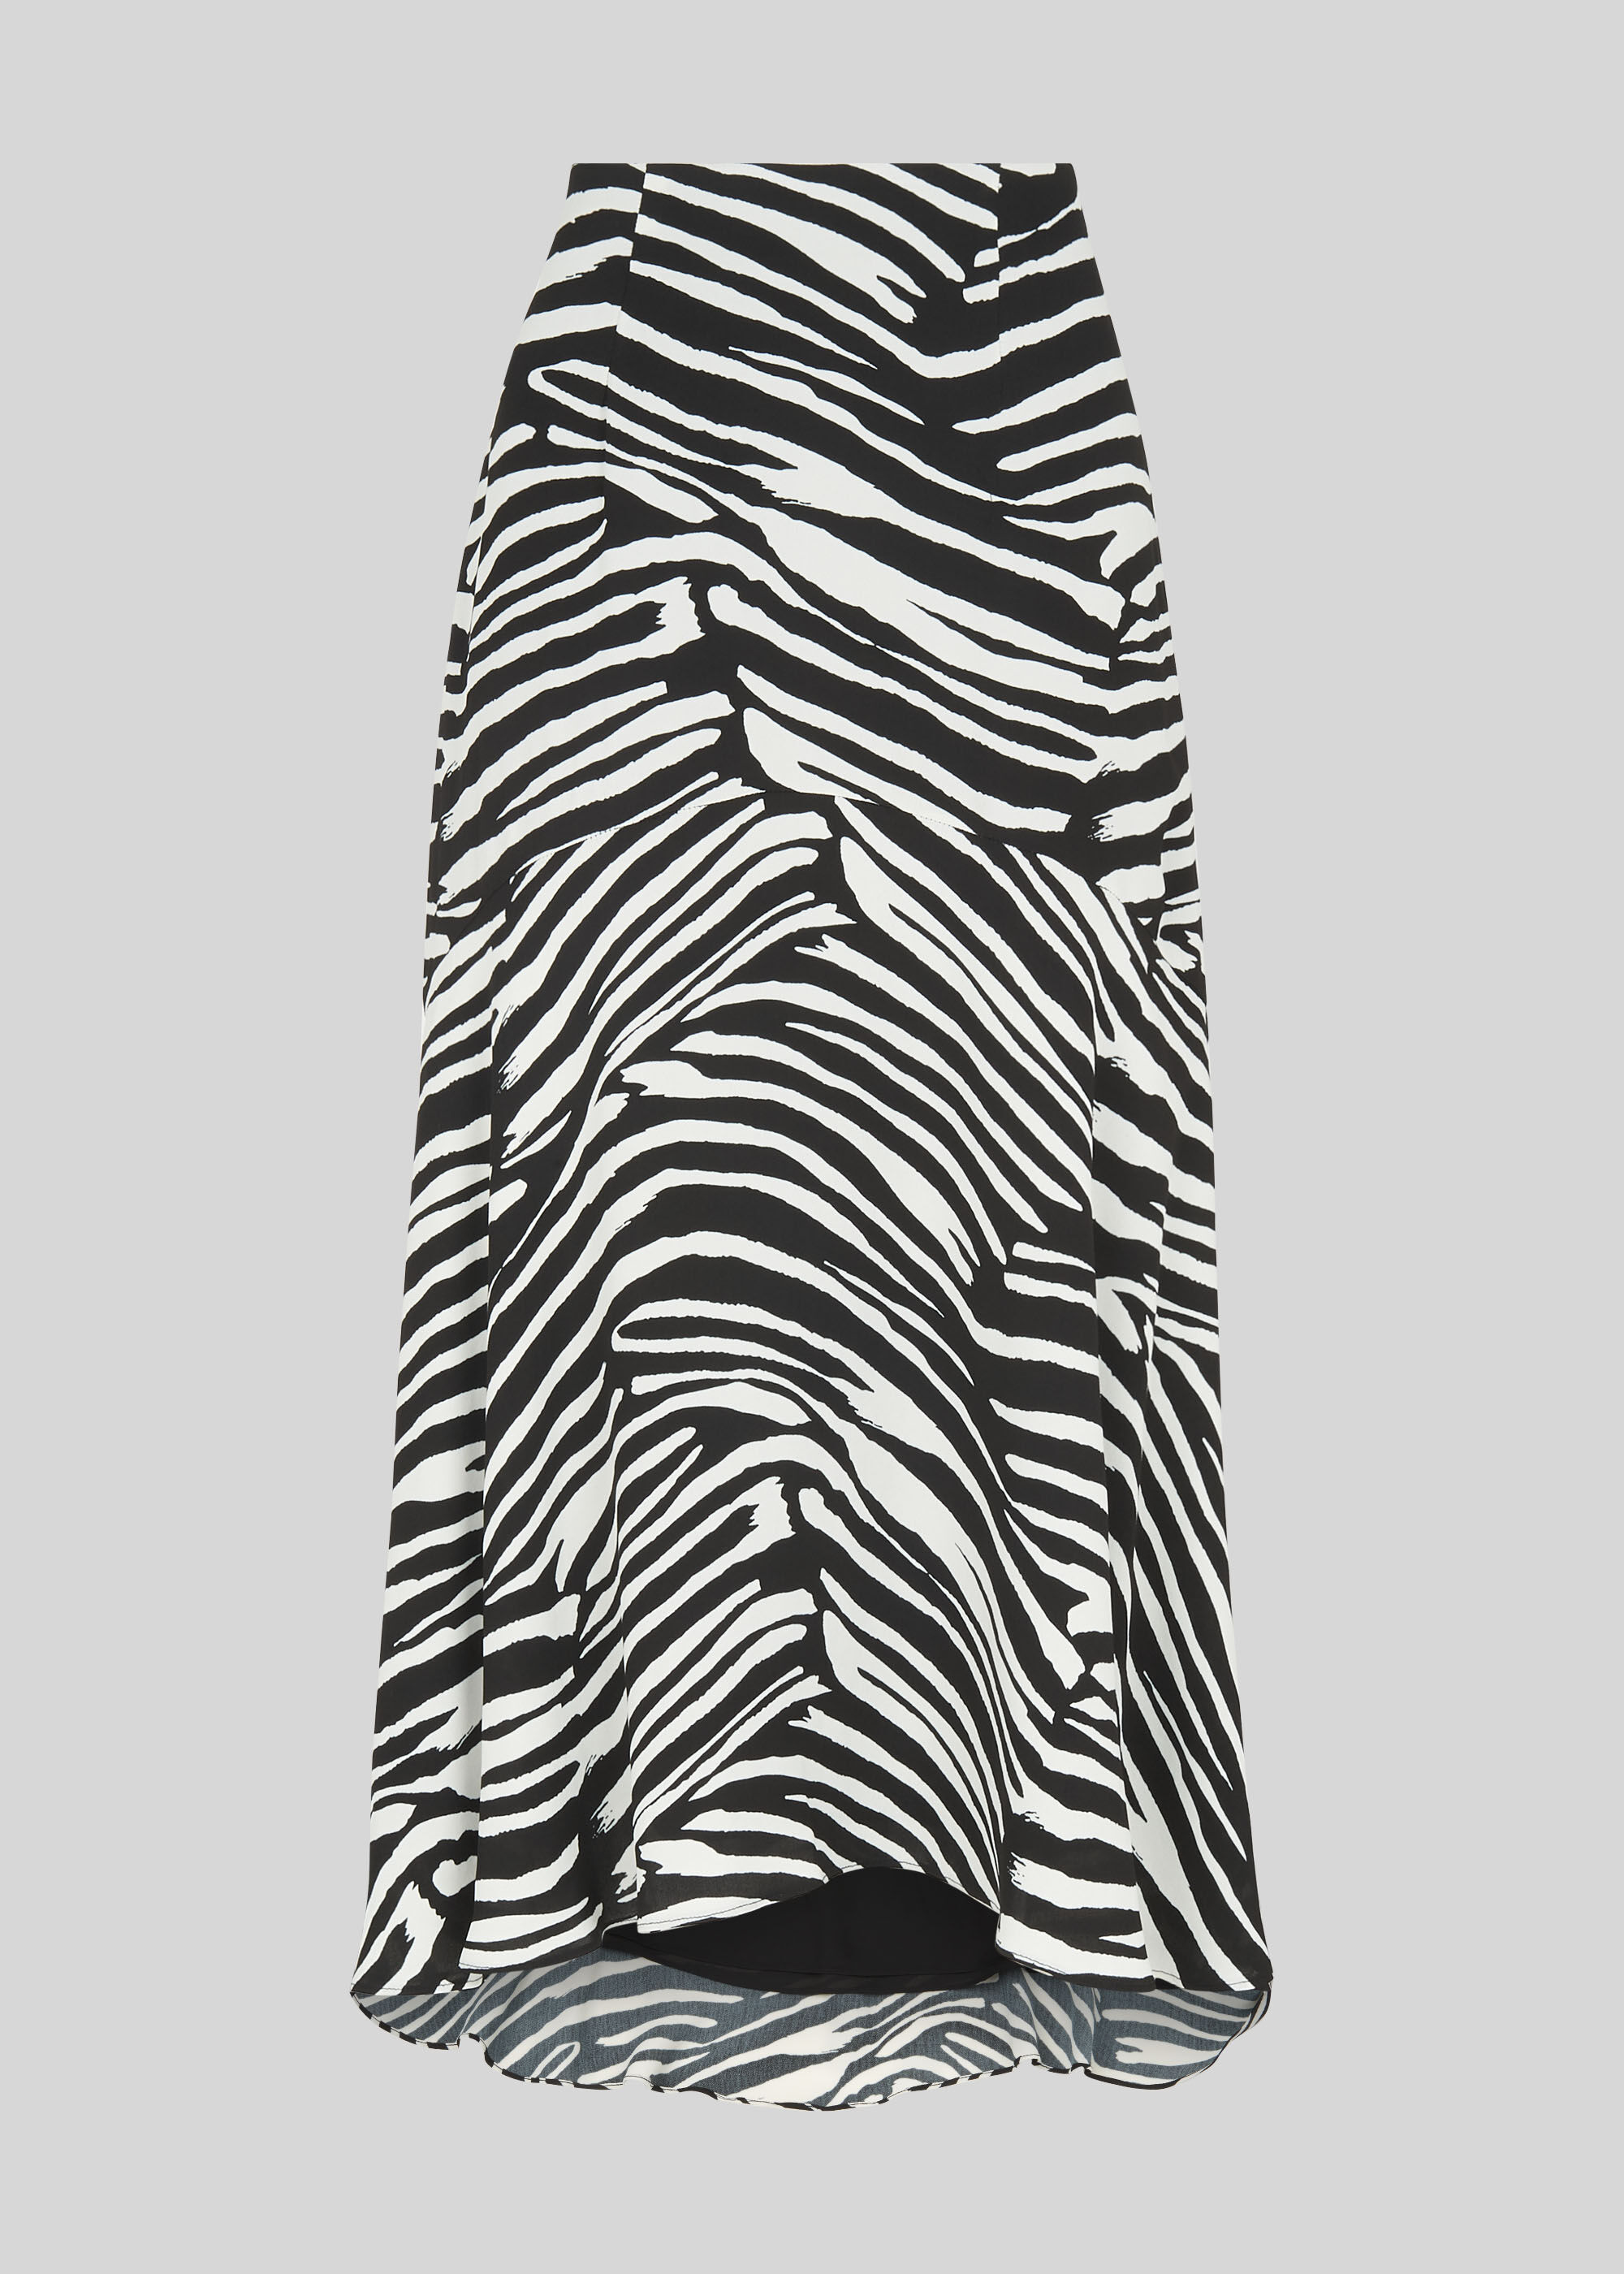 Black And White Zebra Print Skirt 